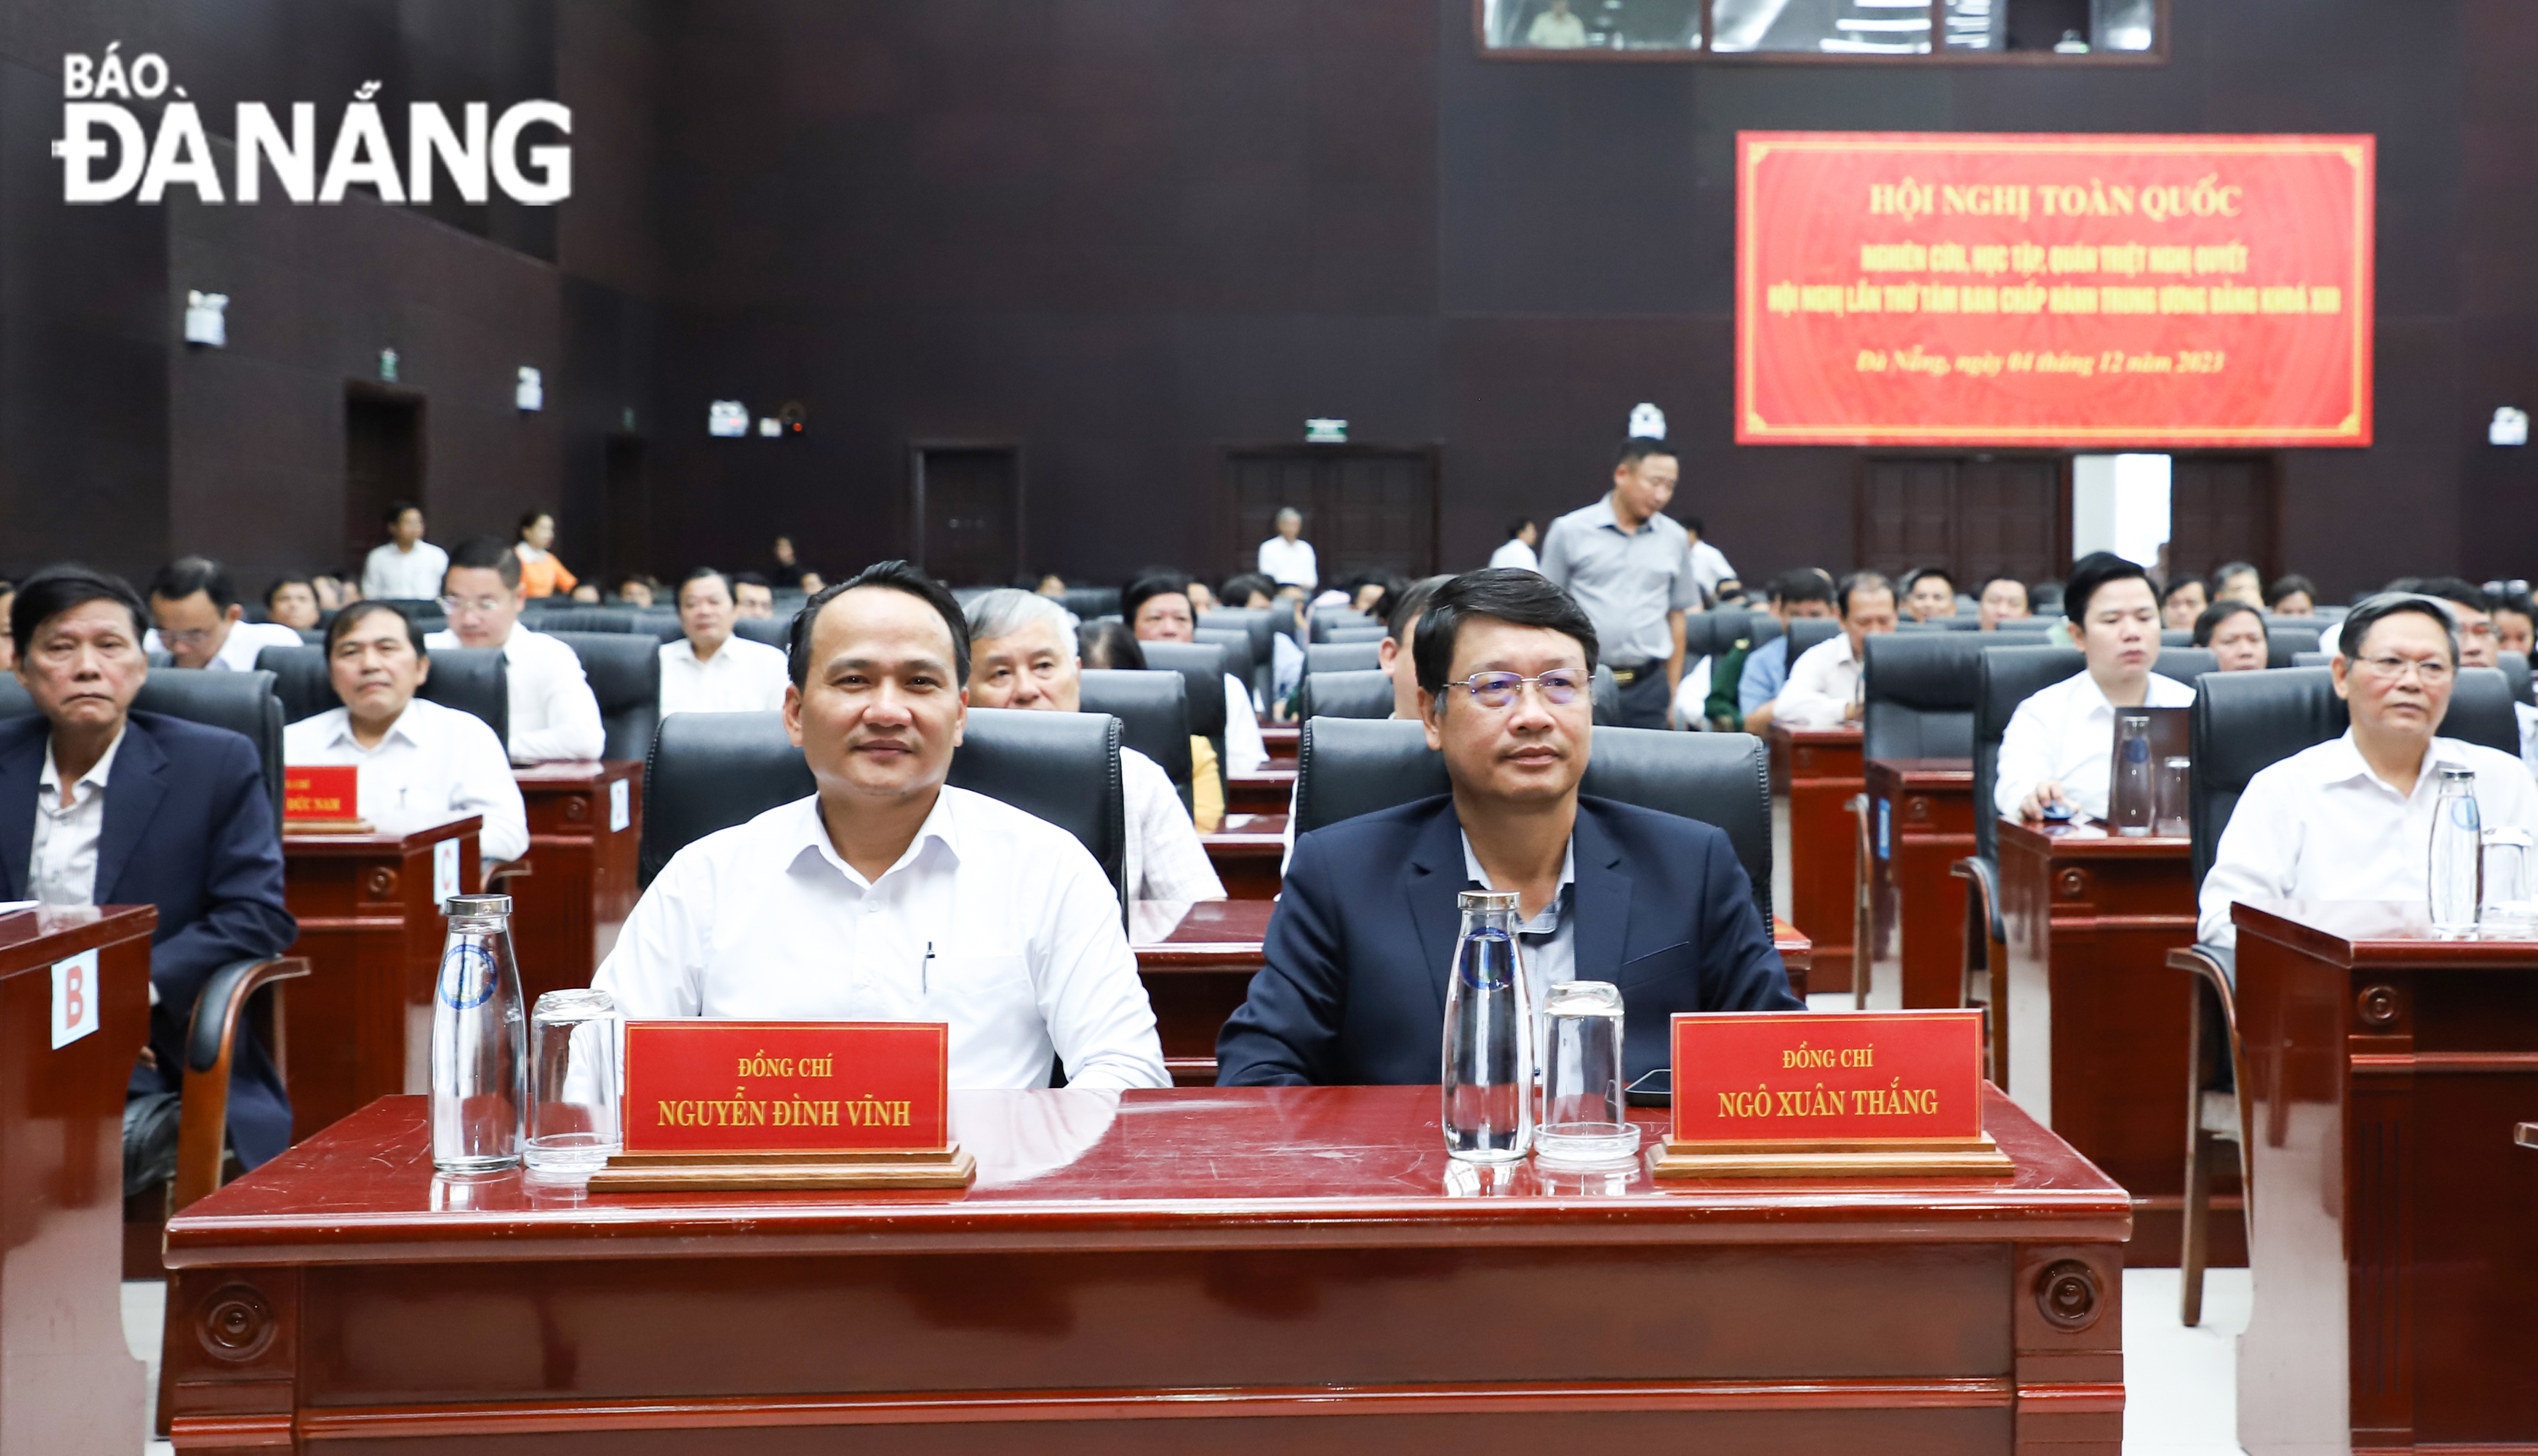 Chủ tịch Ủy ban MTTQ Việt Nam thành phố Ngô Xuân Thắng (bên phải), Trưởng ban Tổ chức Thành ủy Nguyễn Đình Vĩnh (bên trái) cùng các đại biểu dự hội nghị. Ảnh: NGỌC PHÚ